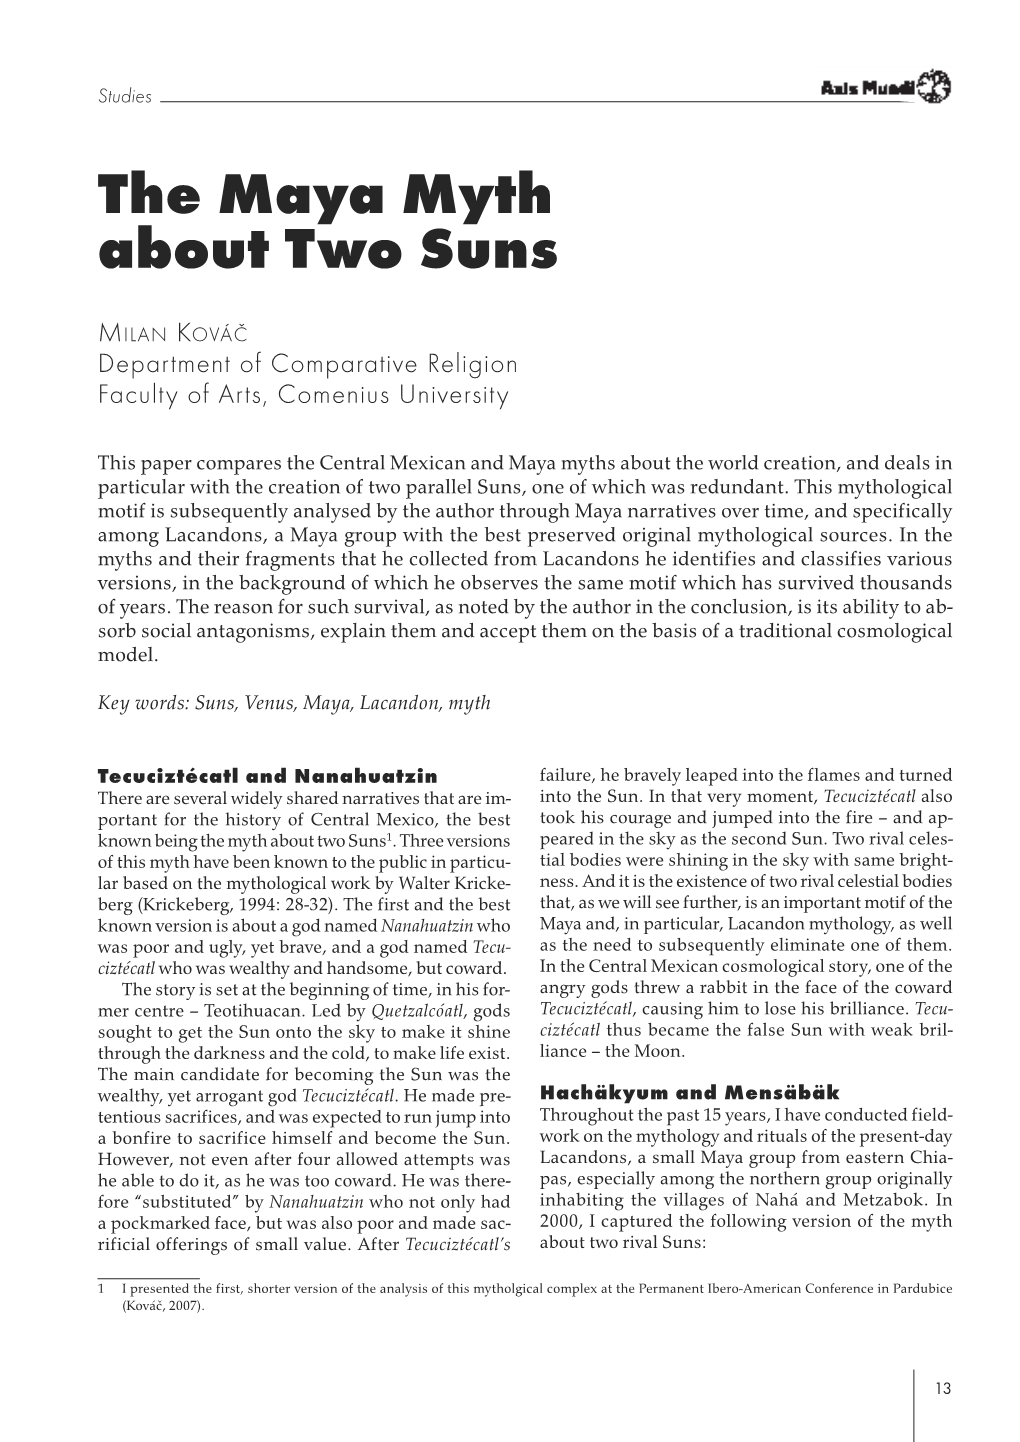 Milan Kováč: the Maya Myth About Two Suns